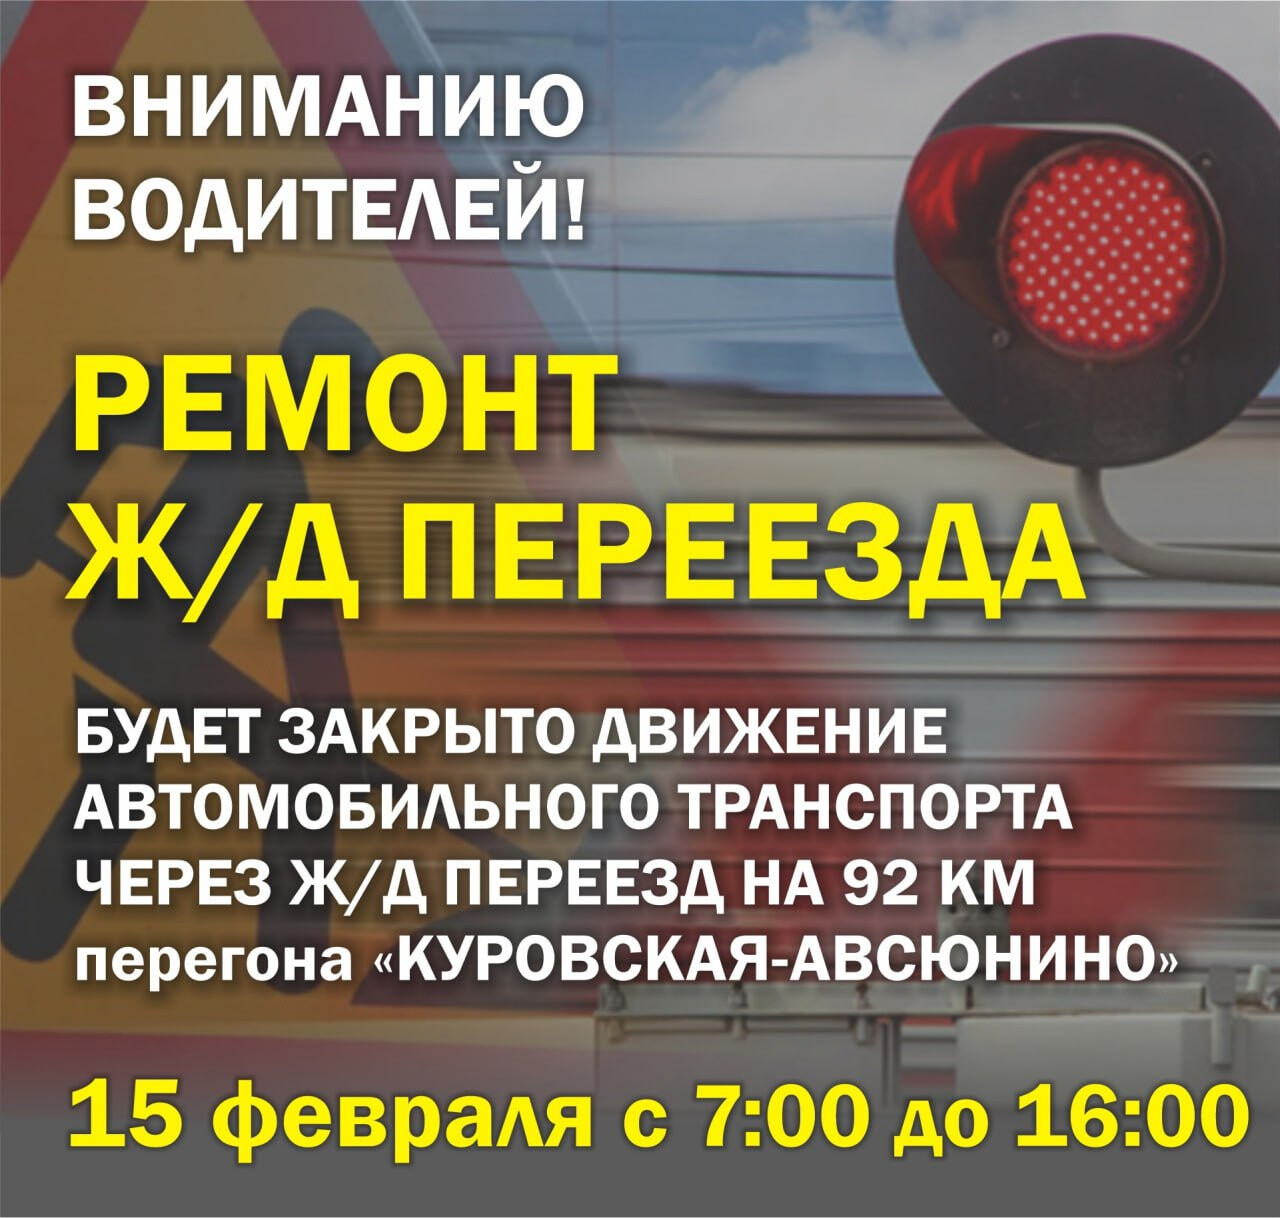 Движение автомобилей через ж/д переезд на 92 км перегона Куровская-Авсюнино будет закрыто